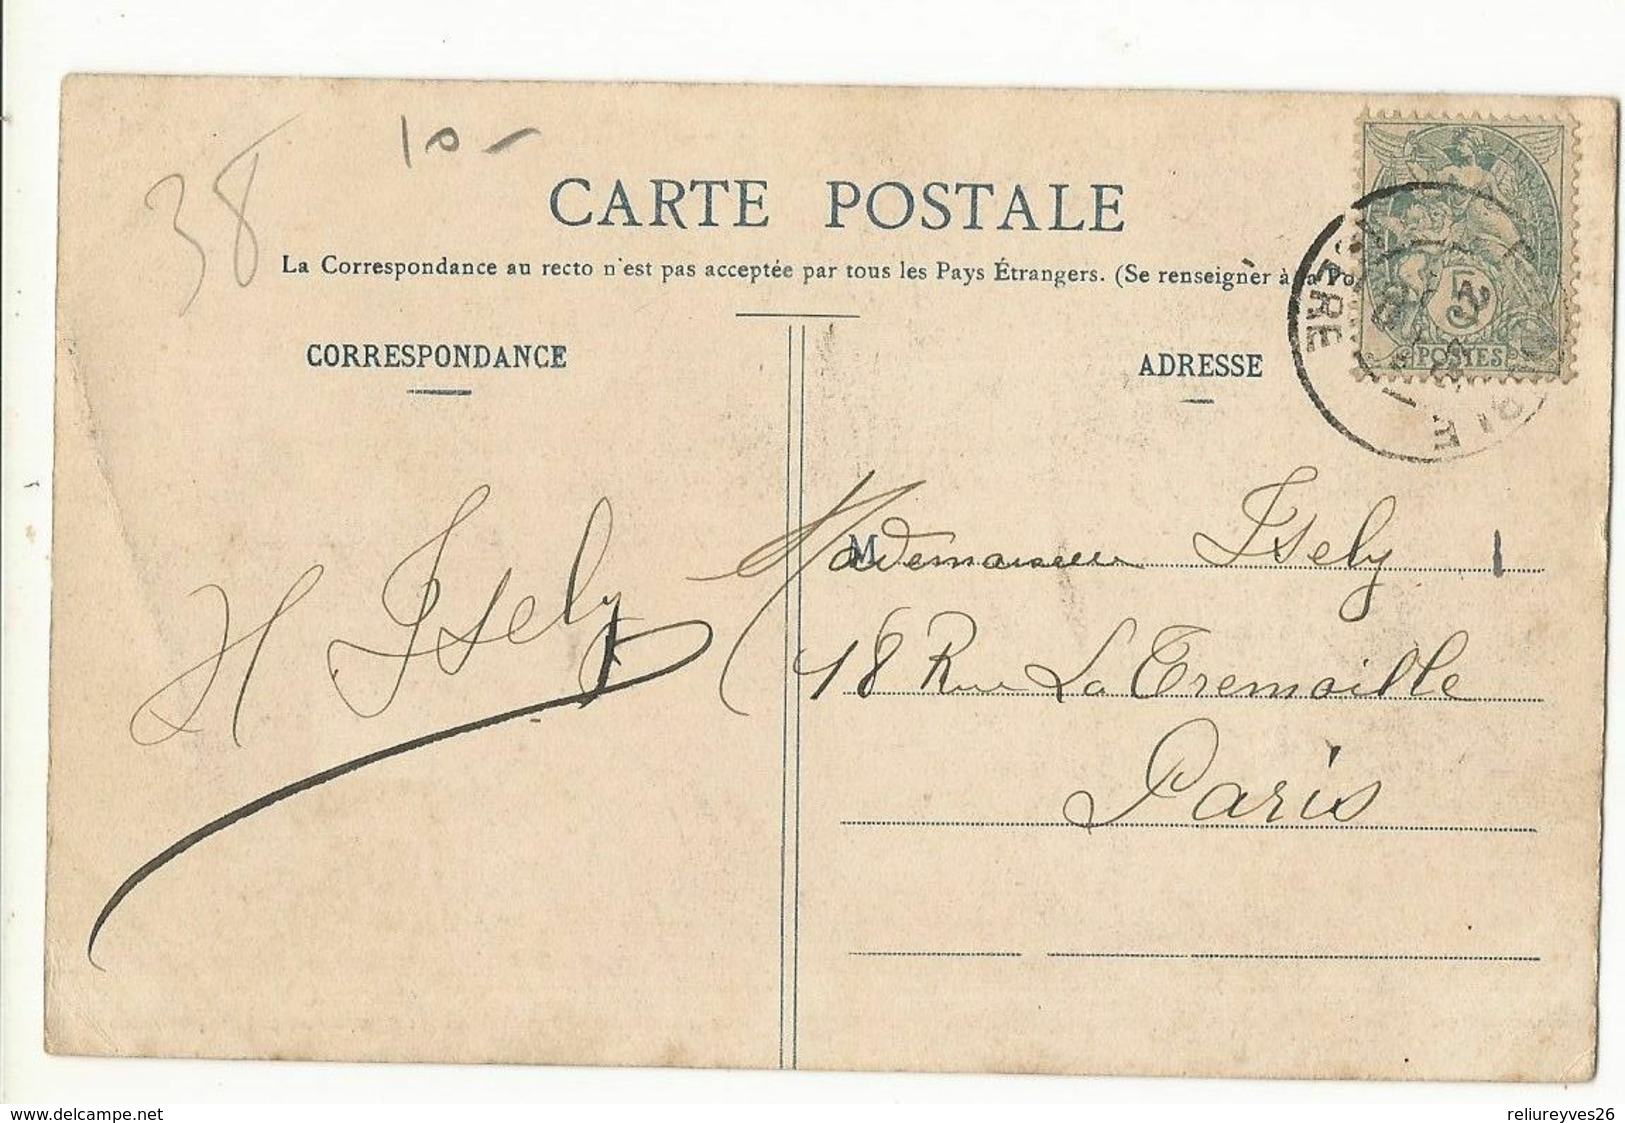 CPSM, D. 38, N°539 , Grenoble , L' Isère à La Tronche Et Le St.. Eynard  ,Ed. O.V. , 1909 - La Tronche